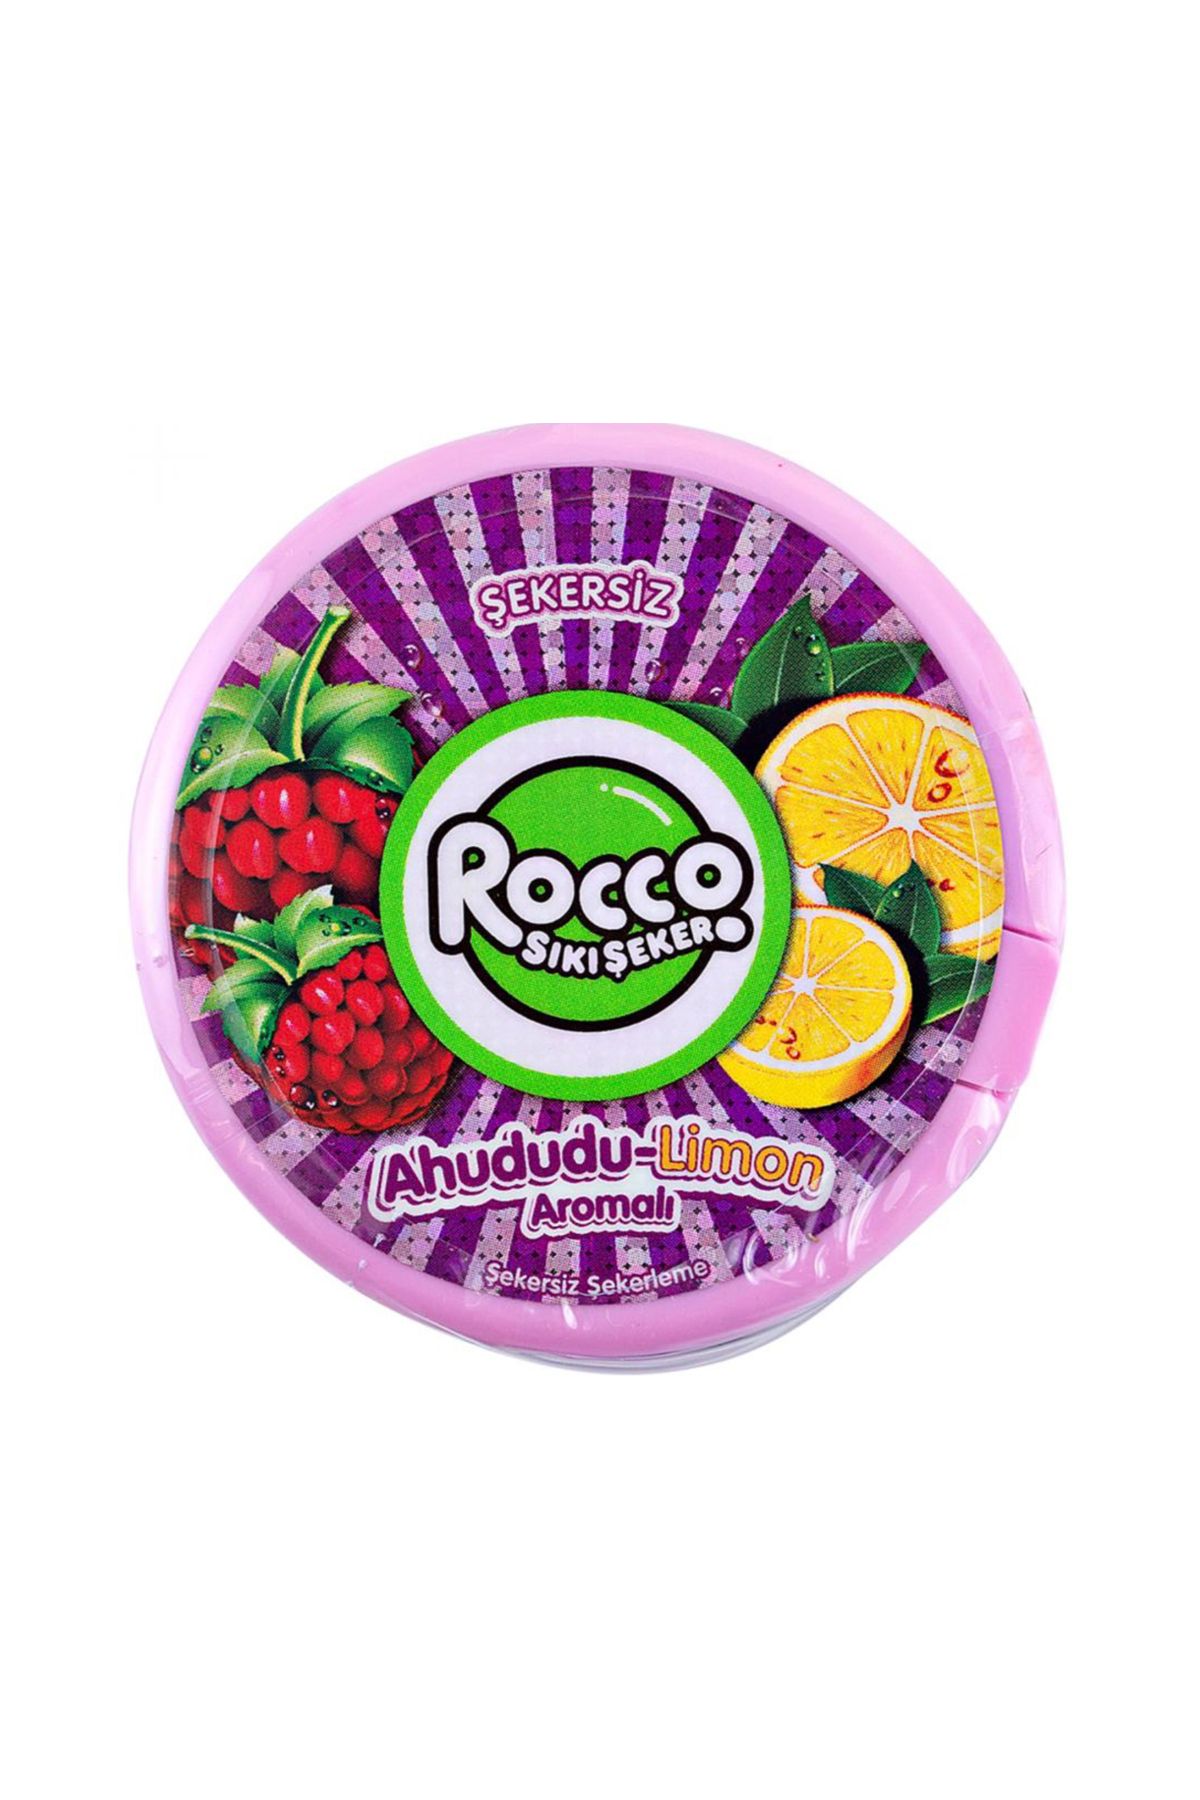 Rocco Şekersiz sıkı şeker rocco 1 adet